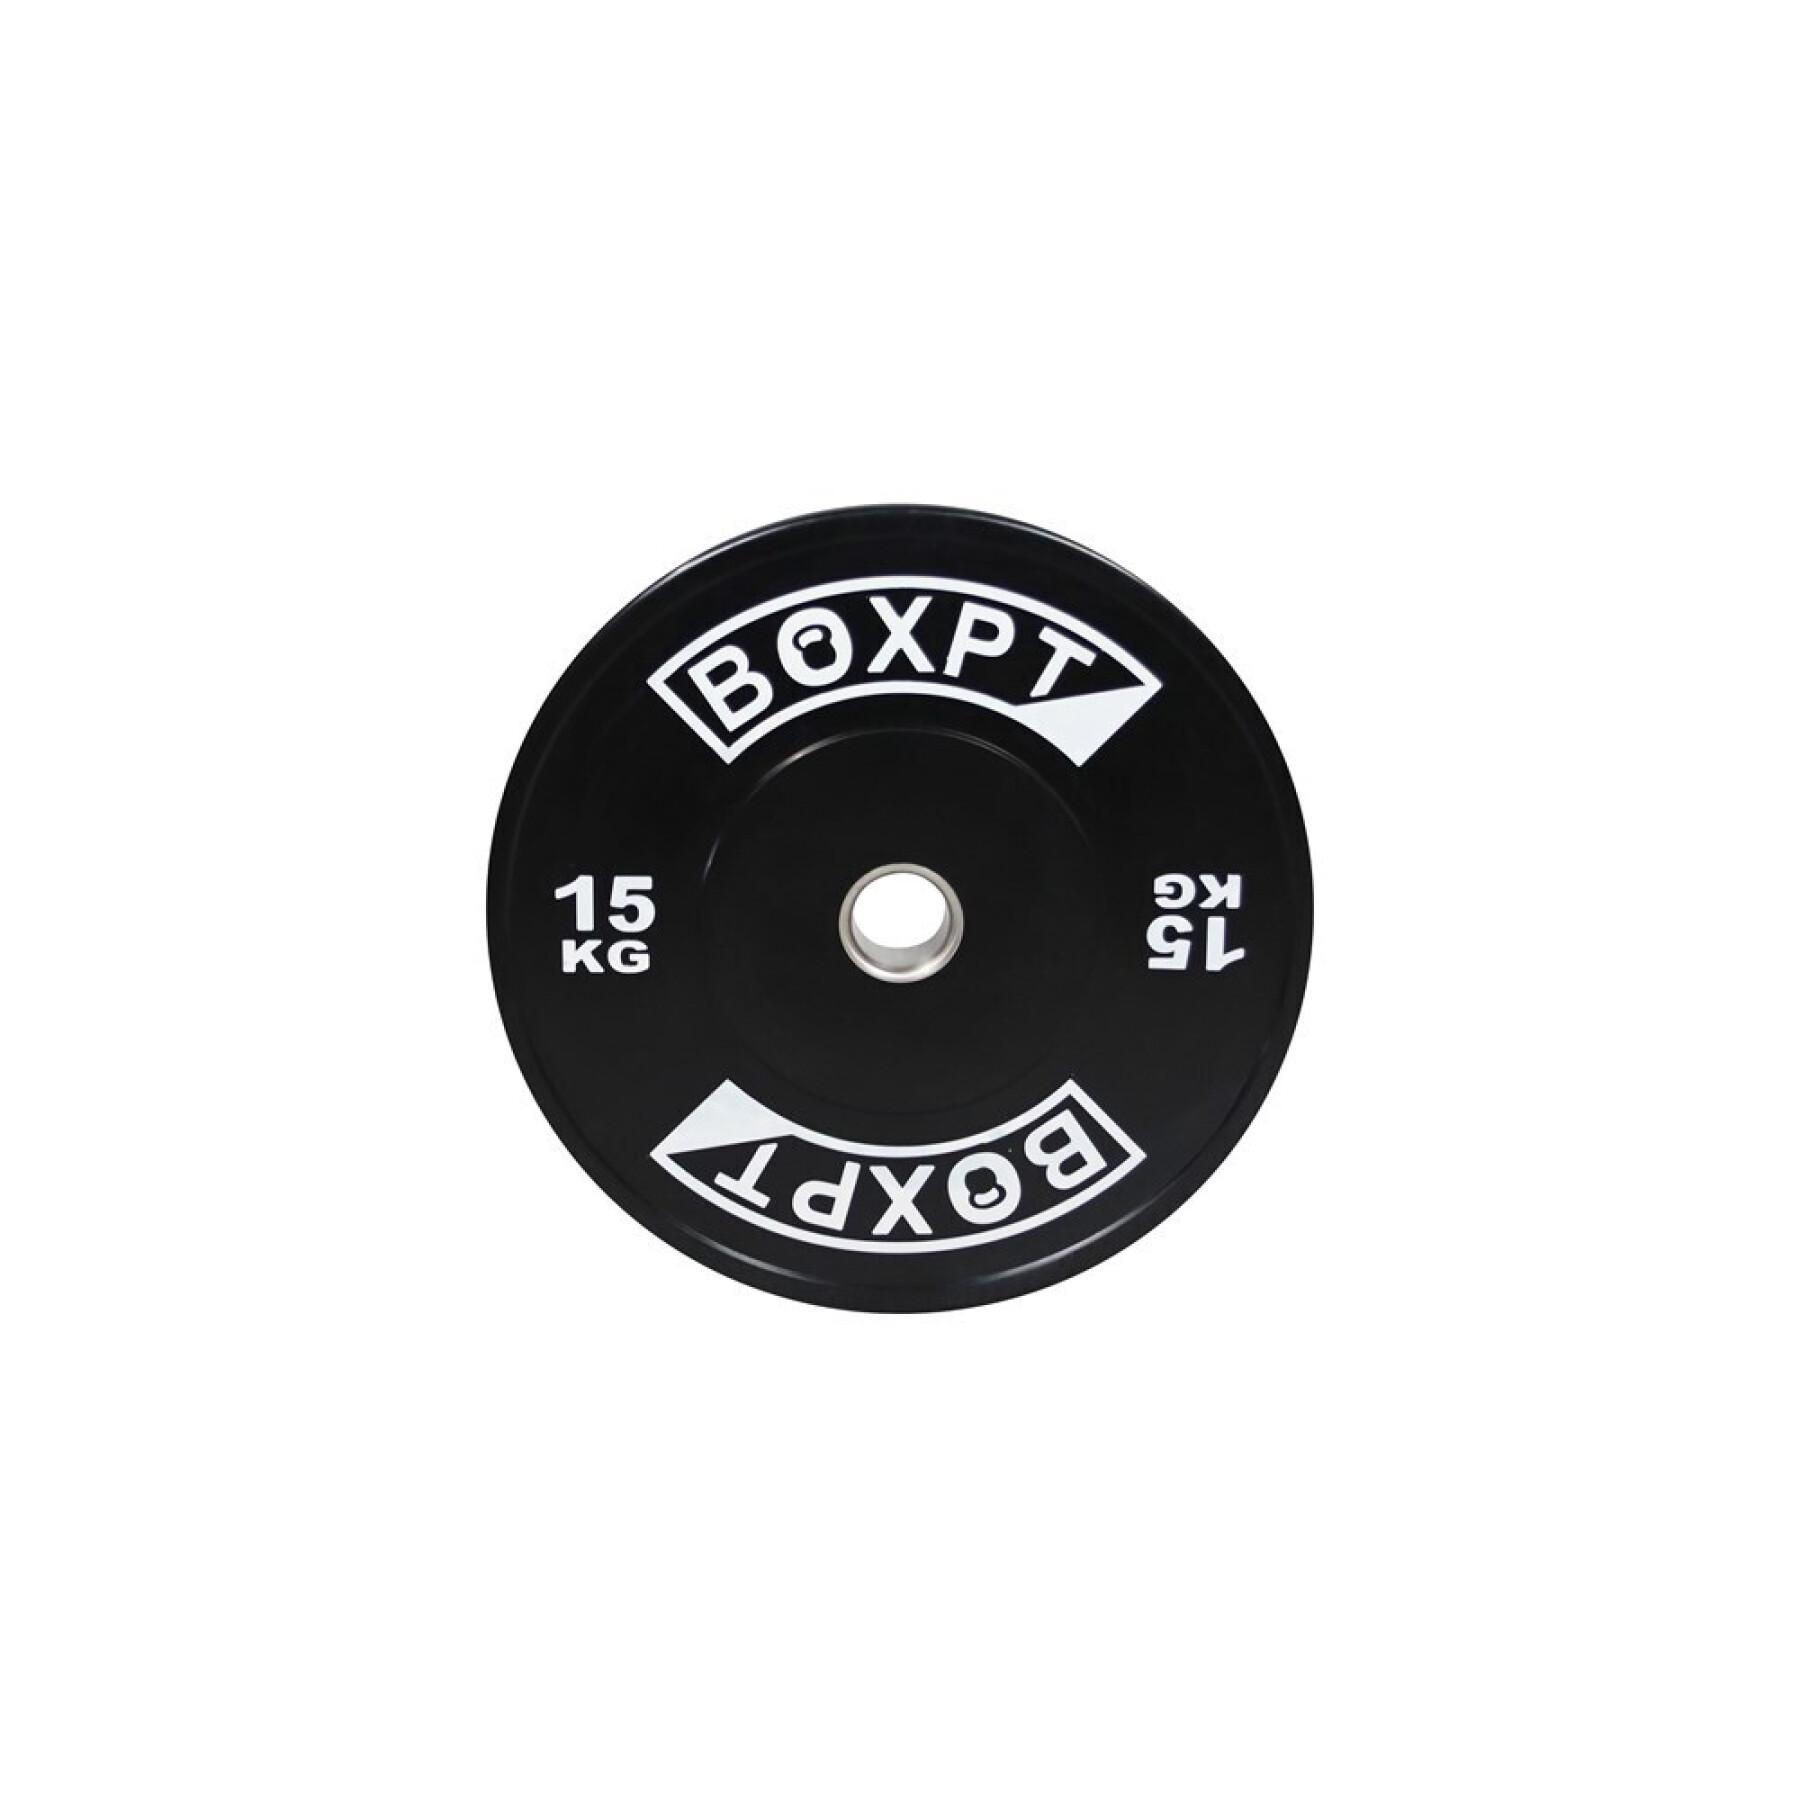 Bodybuilding disc Boxpt 2.0 - 15 kg